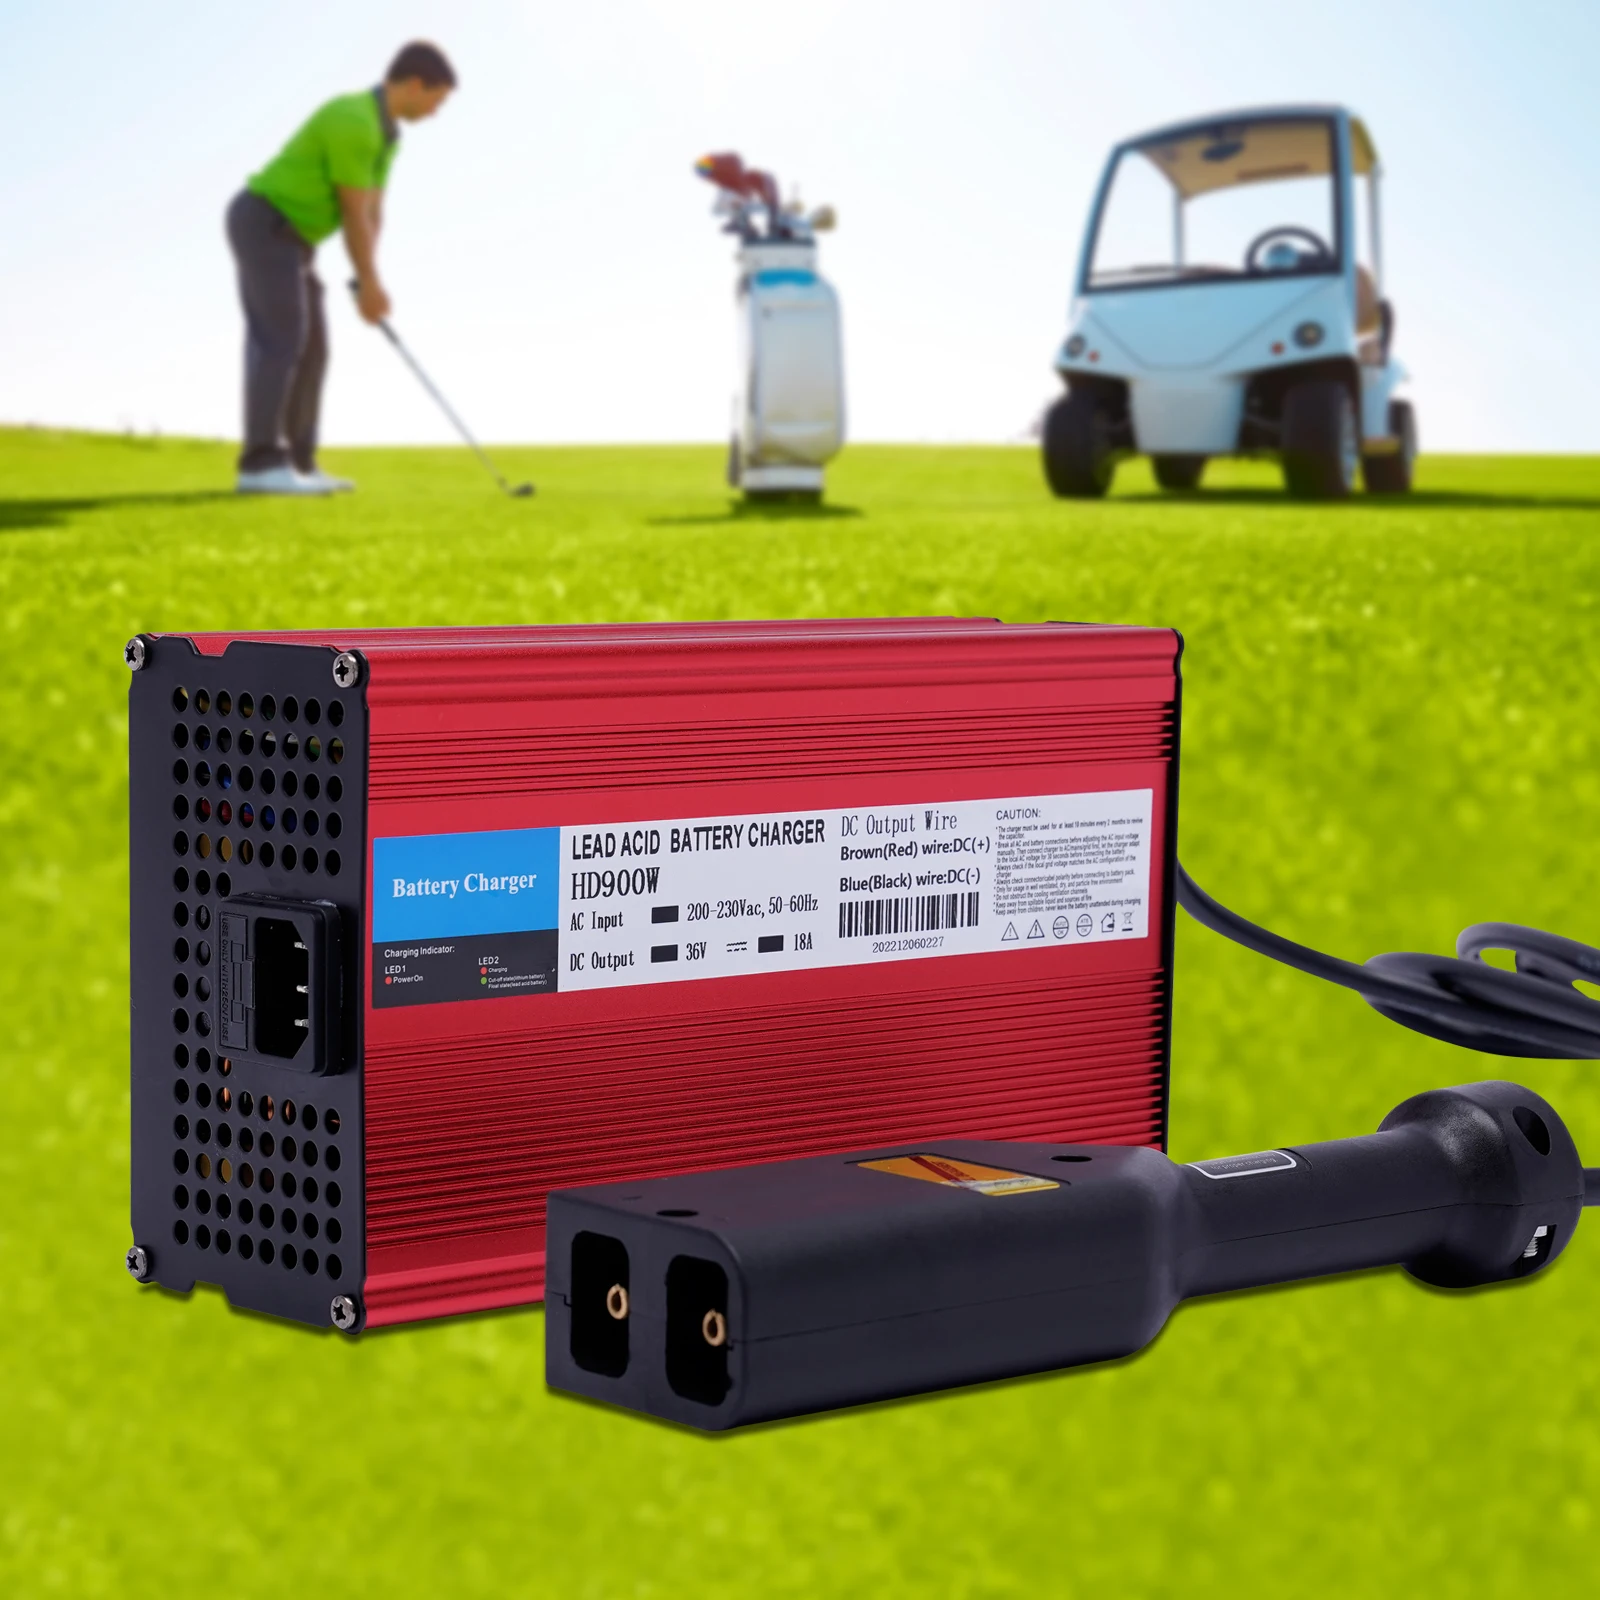 

Зарядное устройство для батарей 36 В, 18 А, для EzGo TXT, зарядное устройство для гольф-тележек, Powerwise D Plug, RV, мотоцикла, гольф-тележек, электровелосипеда, быстрые умные зарядные устройства